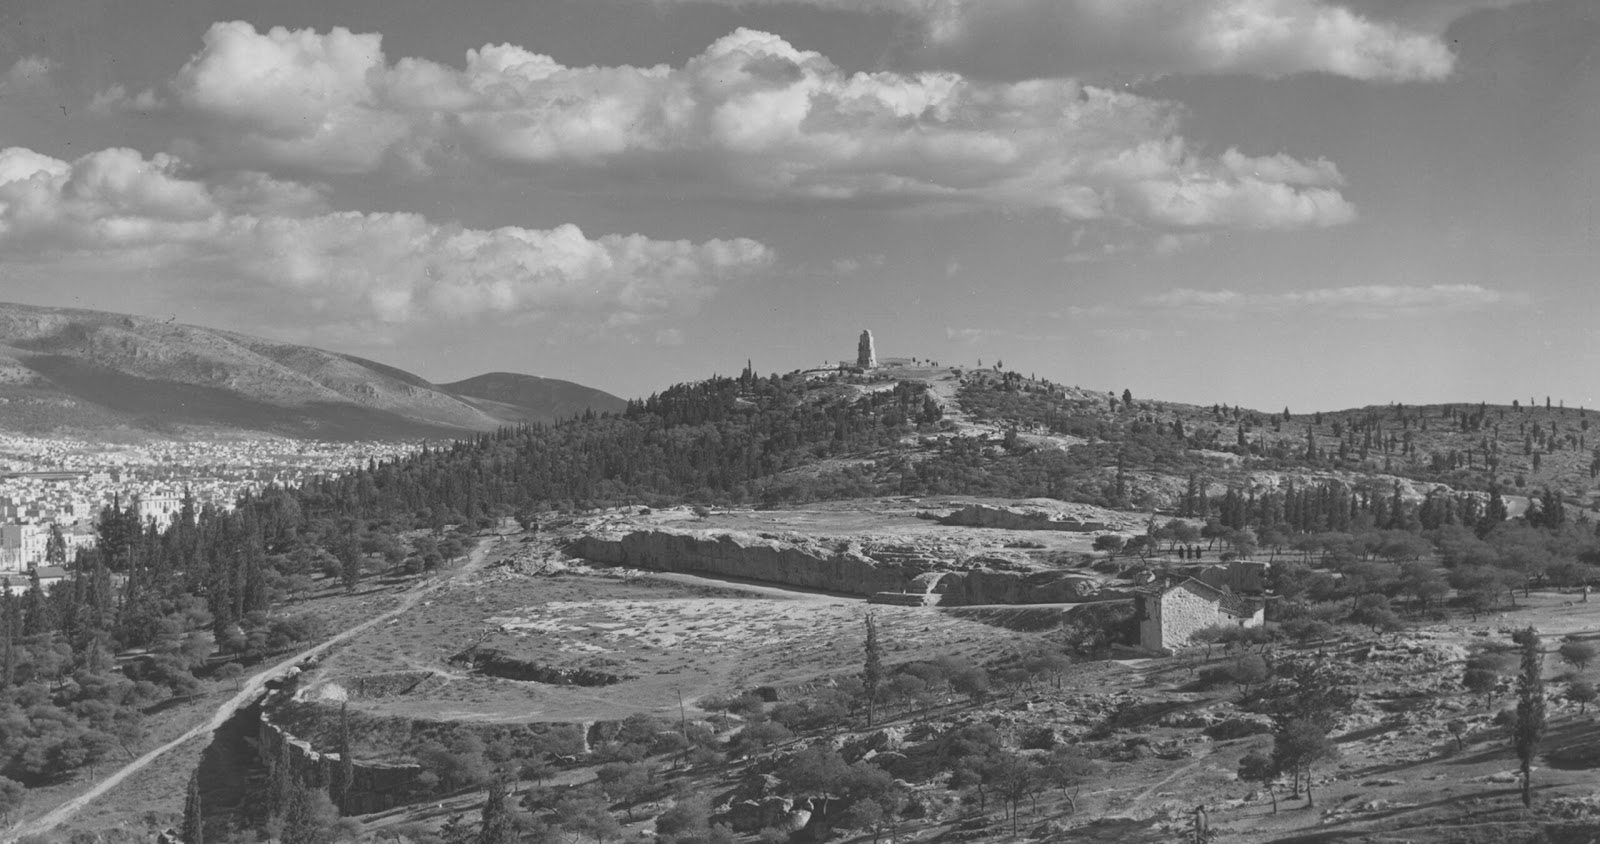 Πνύκα, Νυμφών, Φιλοπάππου: Οι δυτικοί λόφοι της αρχαίας Αθήνας